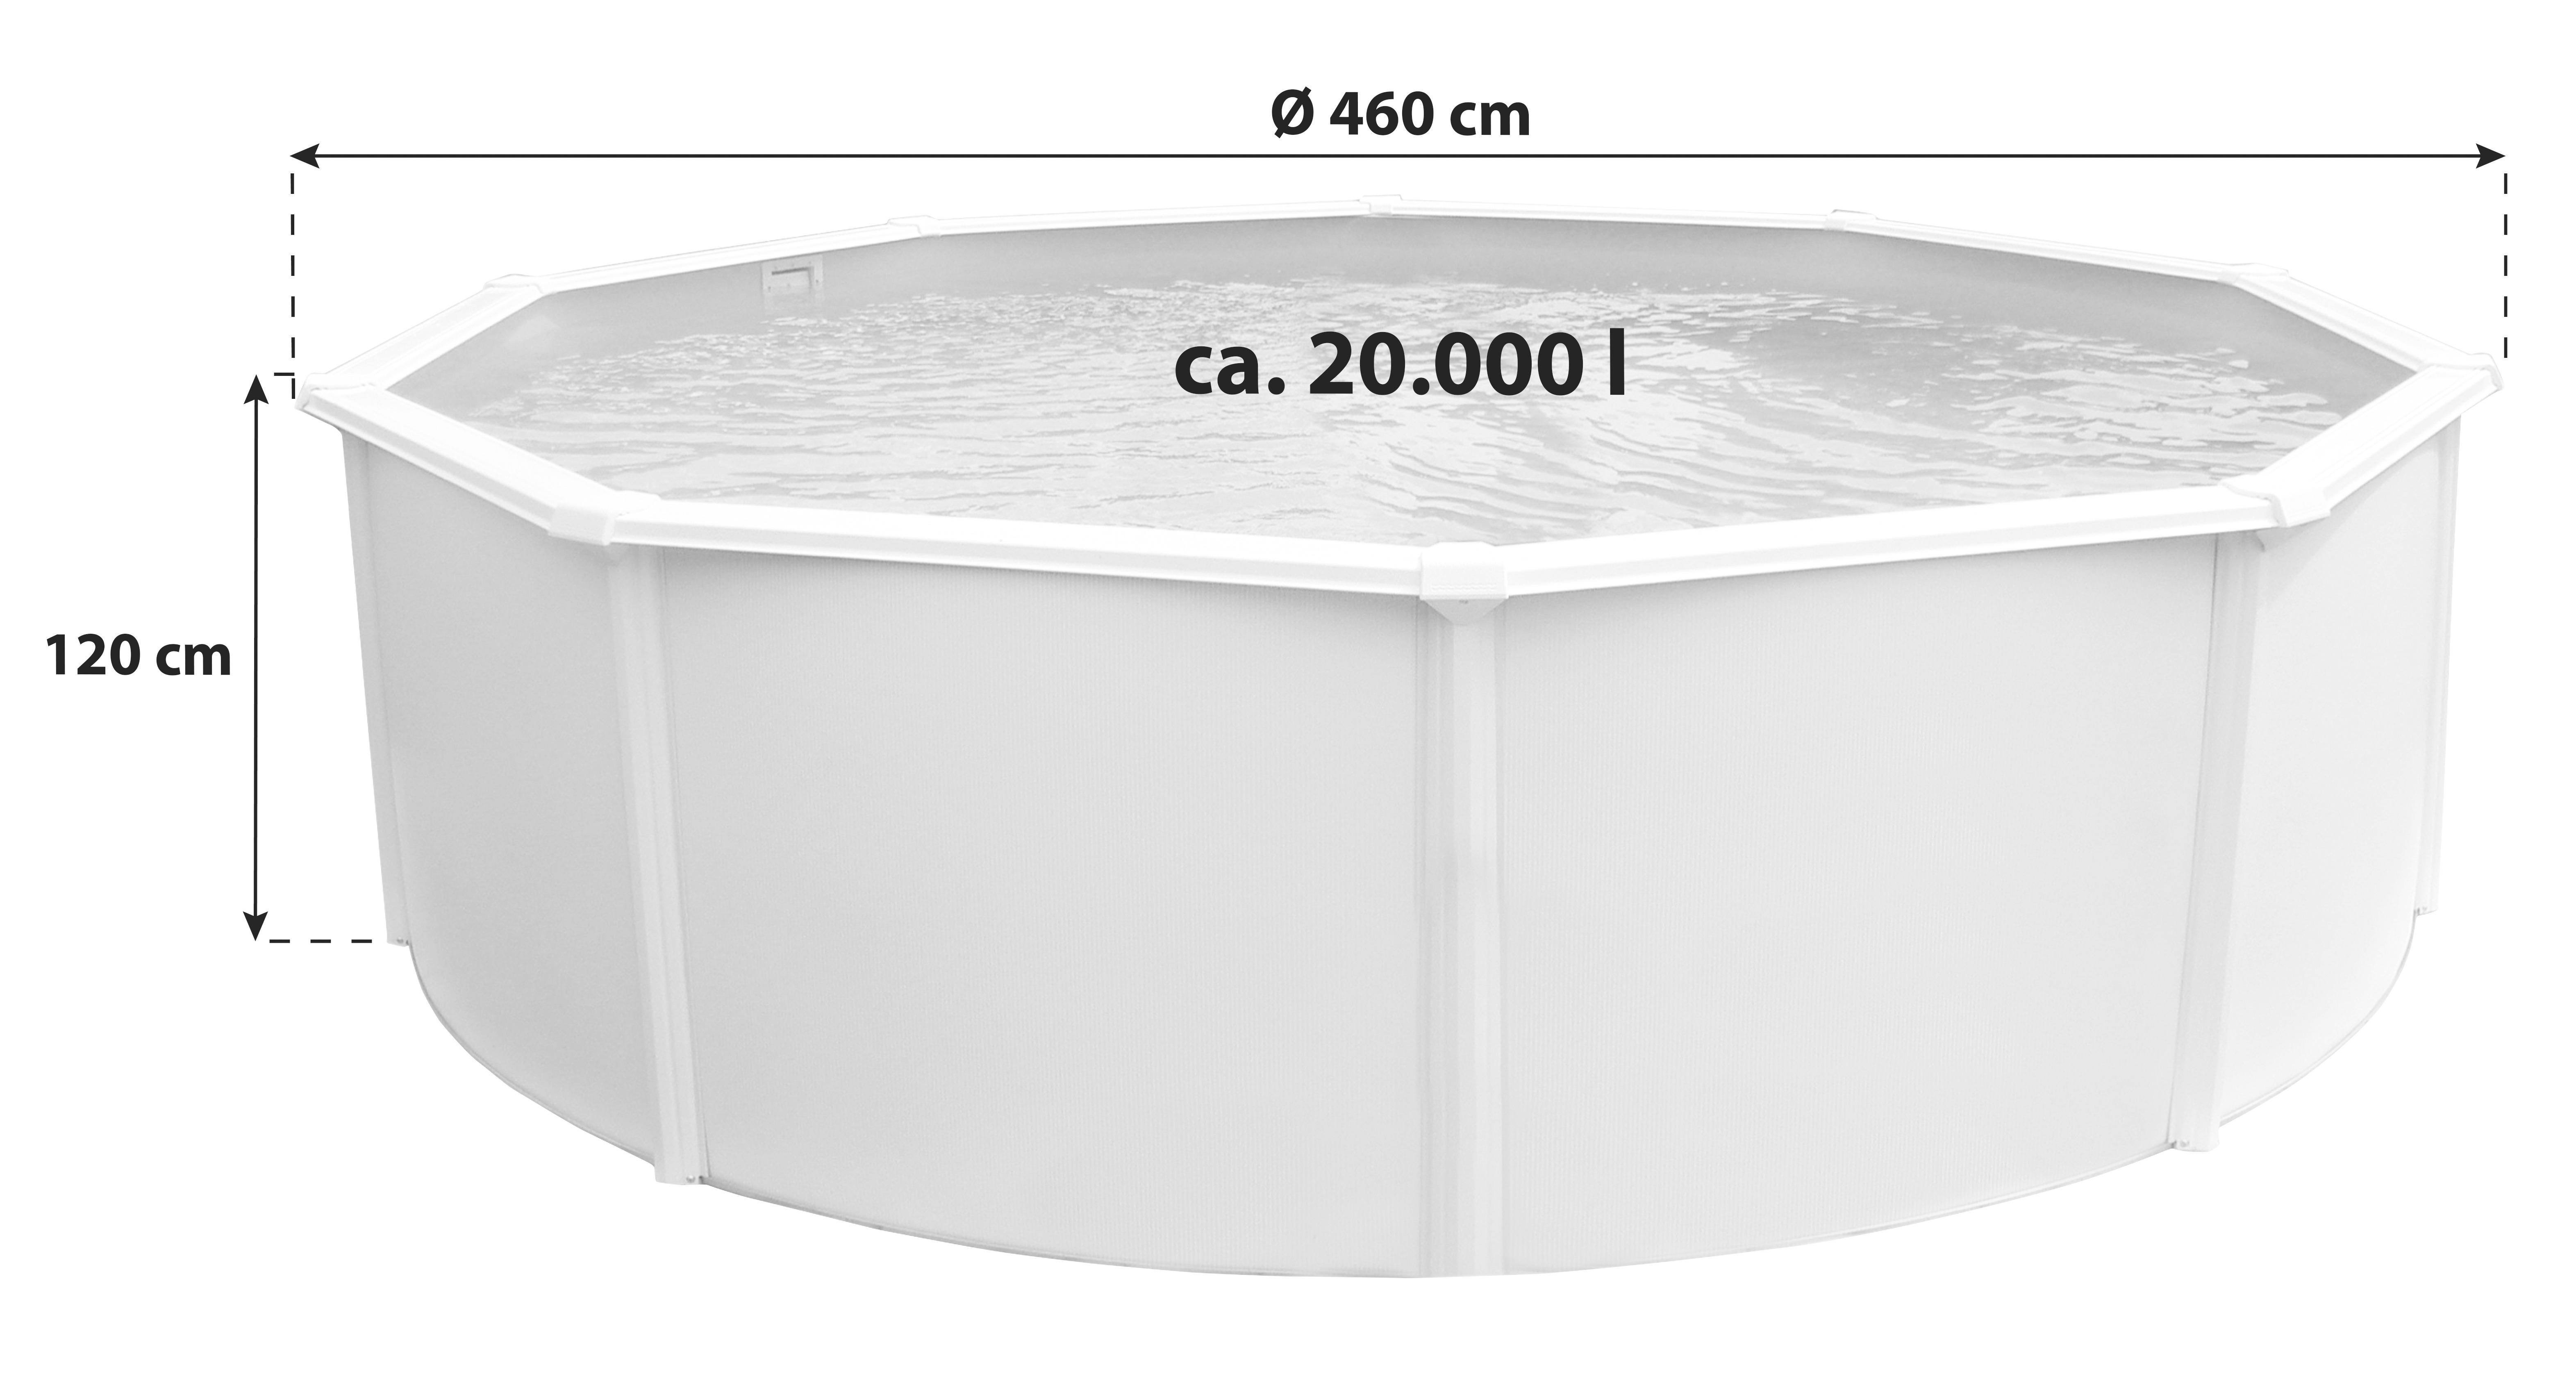 Stahlwandpool Rund Set Steely De Luxe mit Pumpe Ø 460 cm - Weiß, MODERN, Metall (460/120cm)